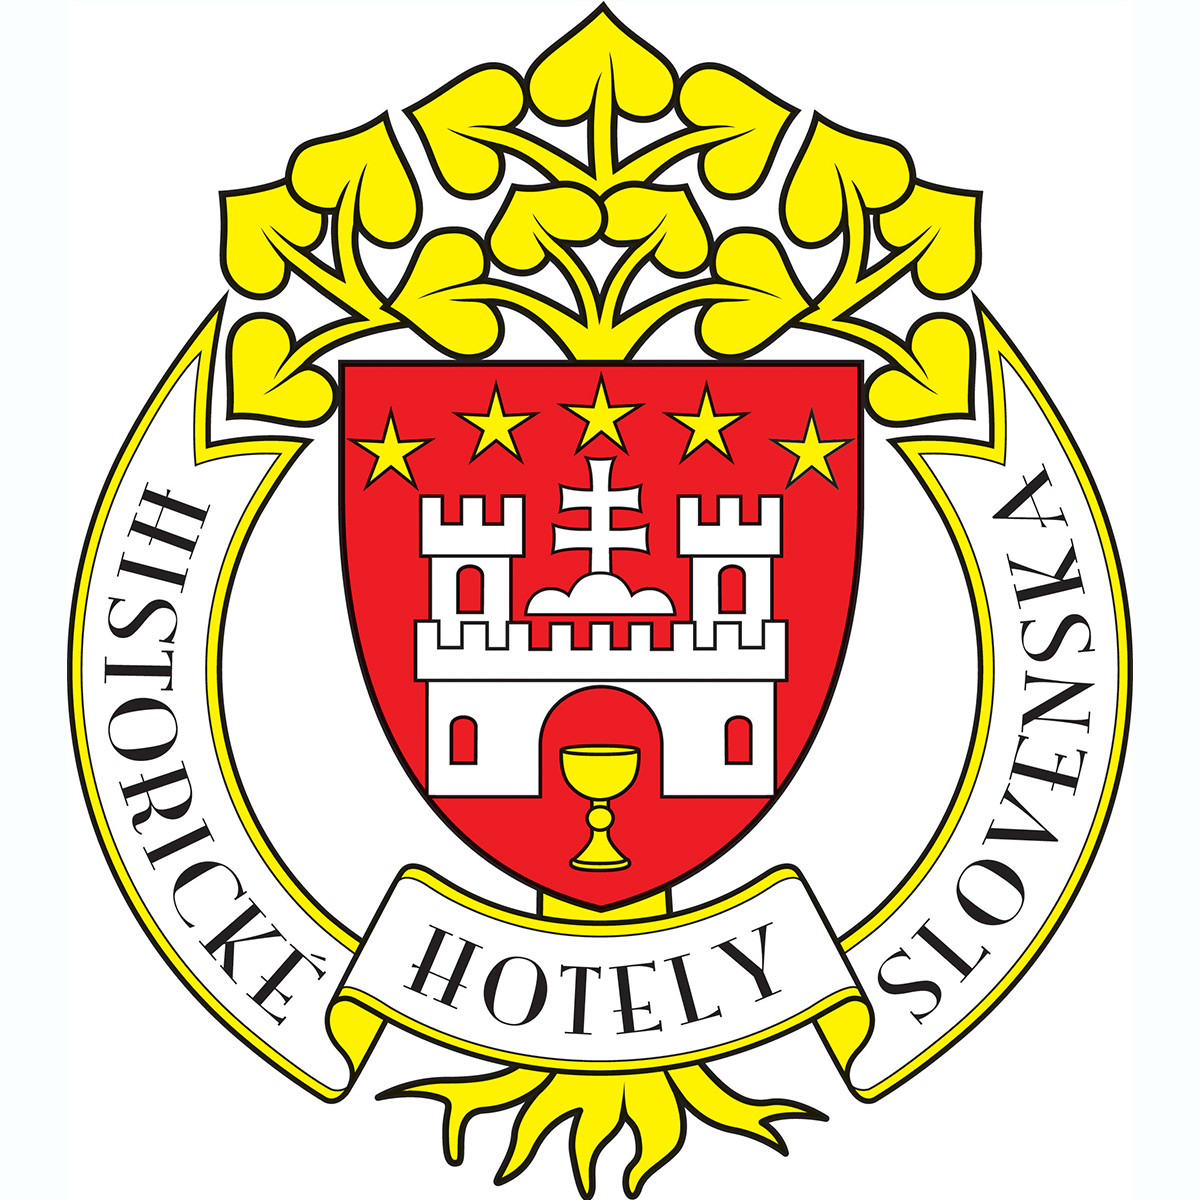 Historic Hotels of Slovakia